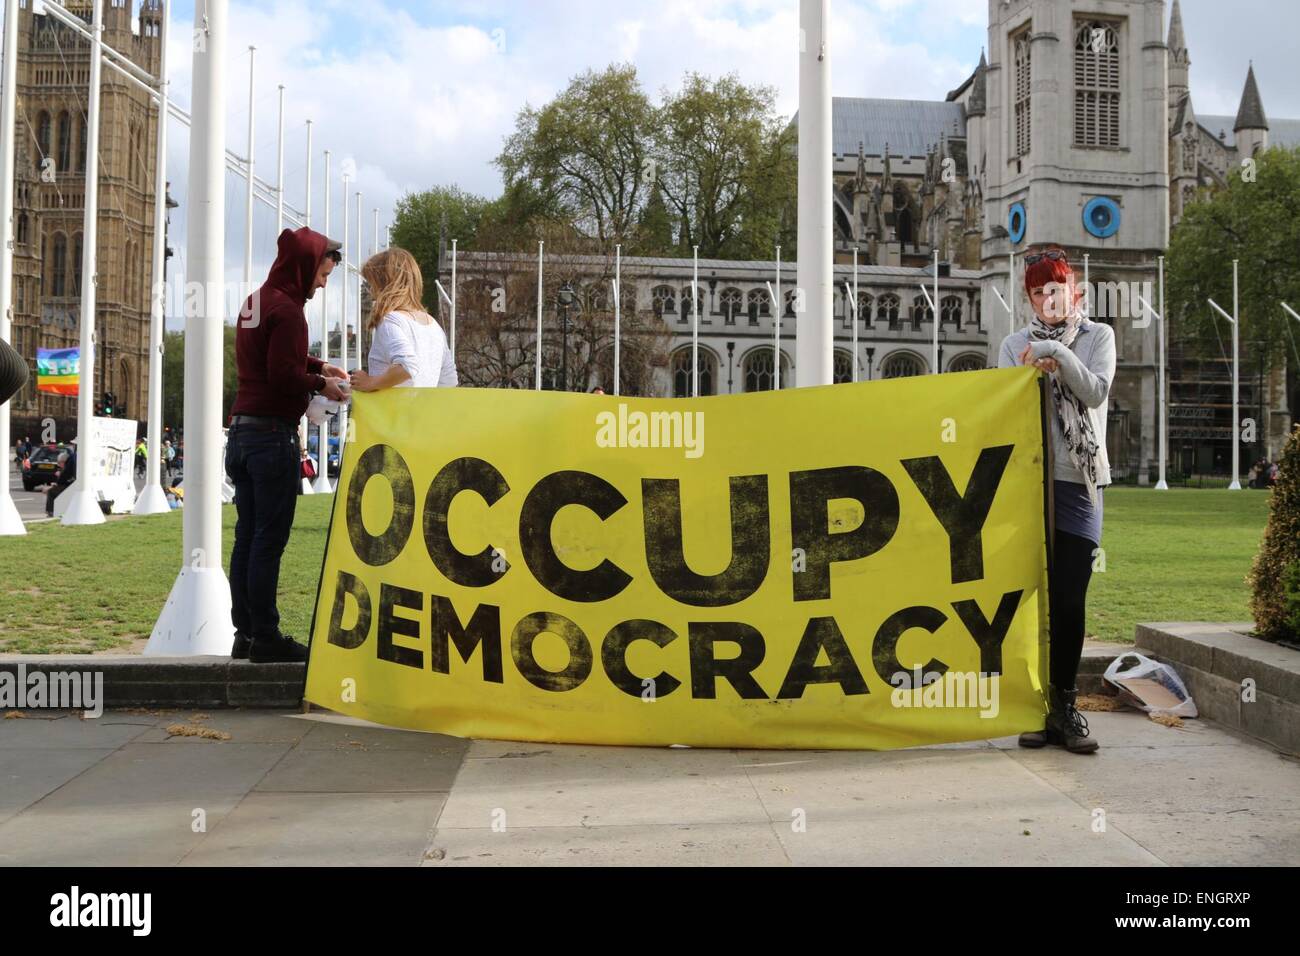 Londres, Royaume-Uni. 5 mai, 2015. protestation pacifique aujourd'hui à Londres, la place du parlement, le groupe ayant l'intention de rester jusqu'à la 10 mai essaient de faire prendre conscience que le système actuel du Parlement est plus autocratique et démocratique. Crédit : Darren Attersley/Alamy Live News Banque D'Images